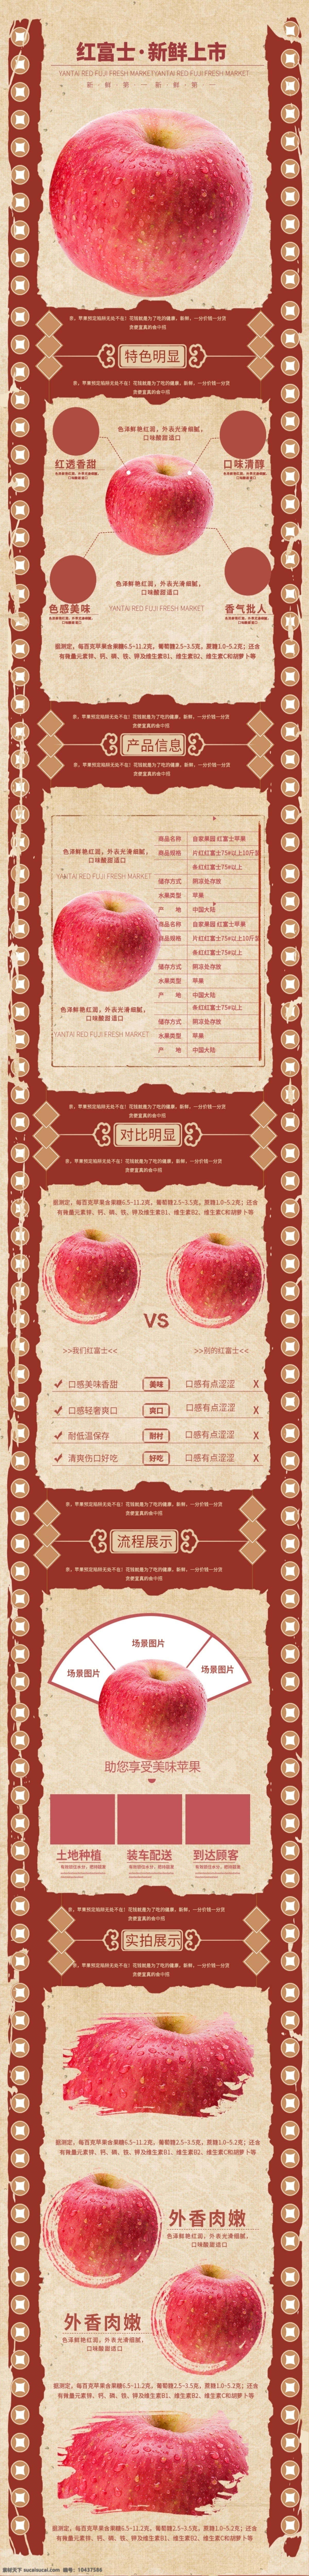 红富士 古典 线性 苹果 水果 详情 页 模板 上新 详情页